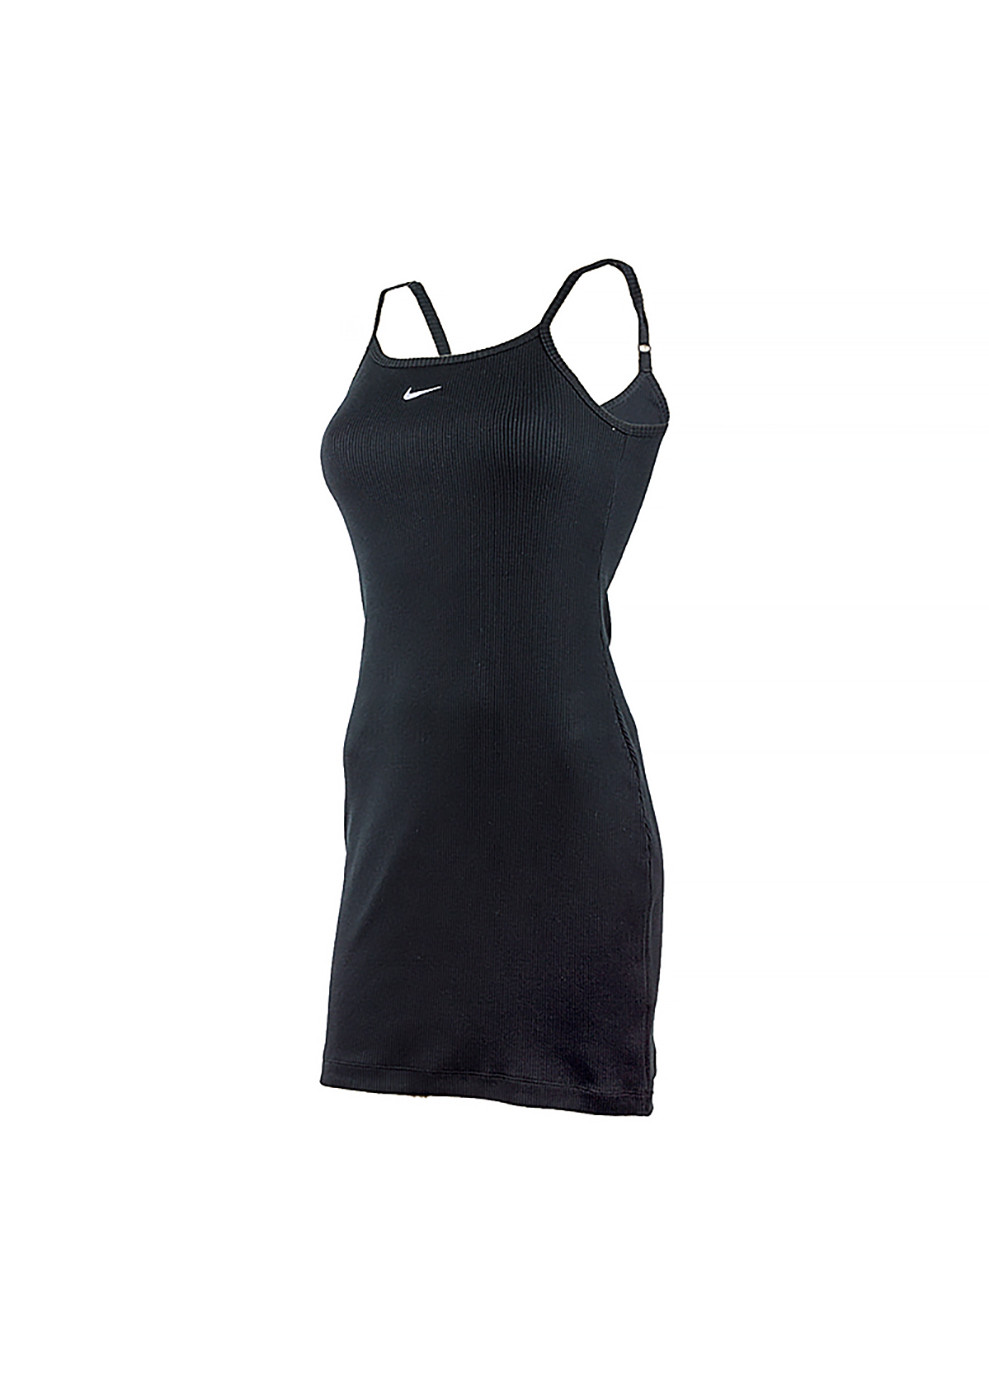 Черное спортивное женское платье w nsw essntl rib dress bycn черный Nike однотонное